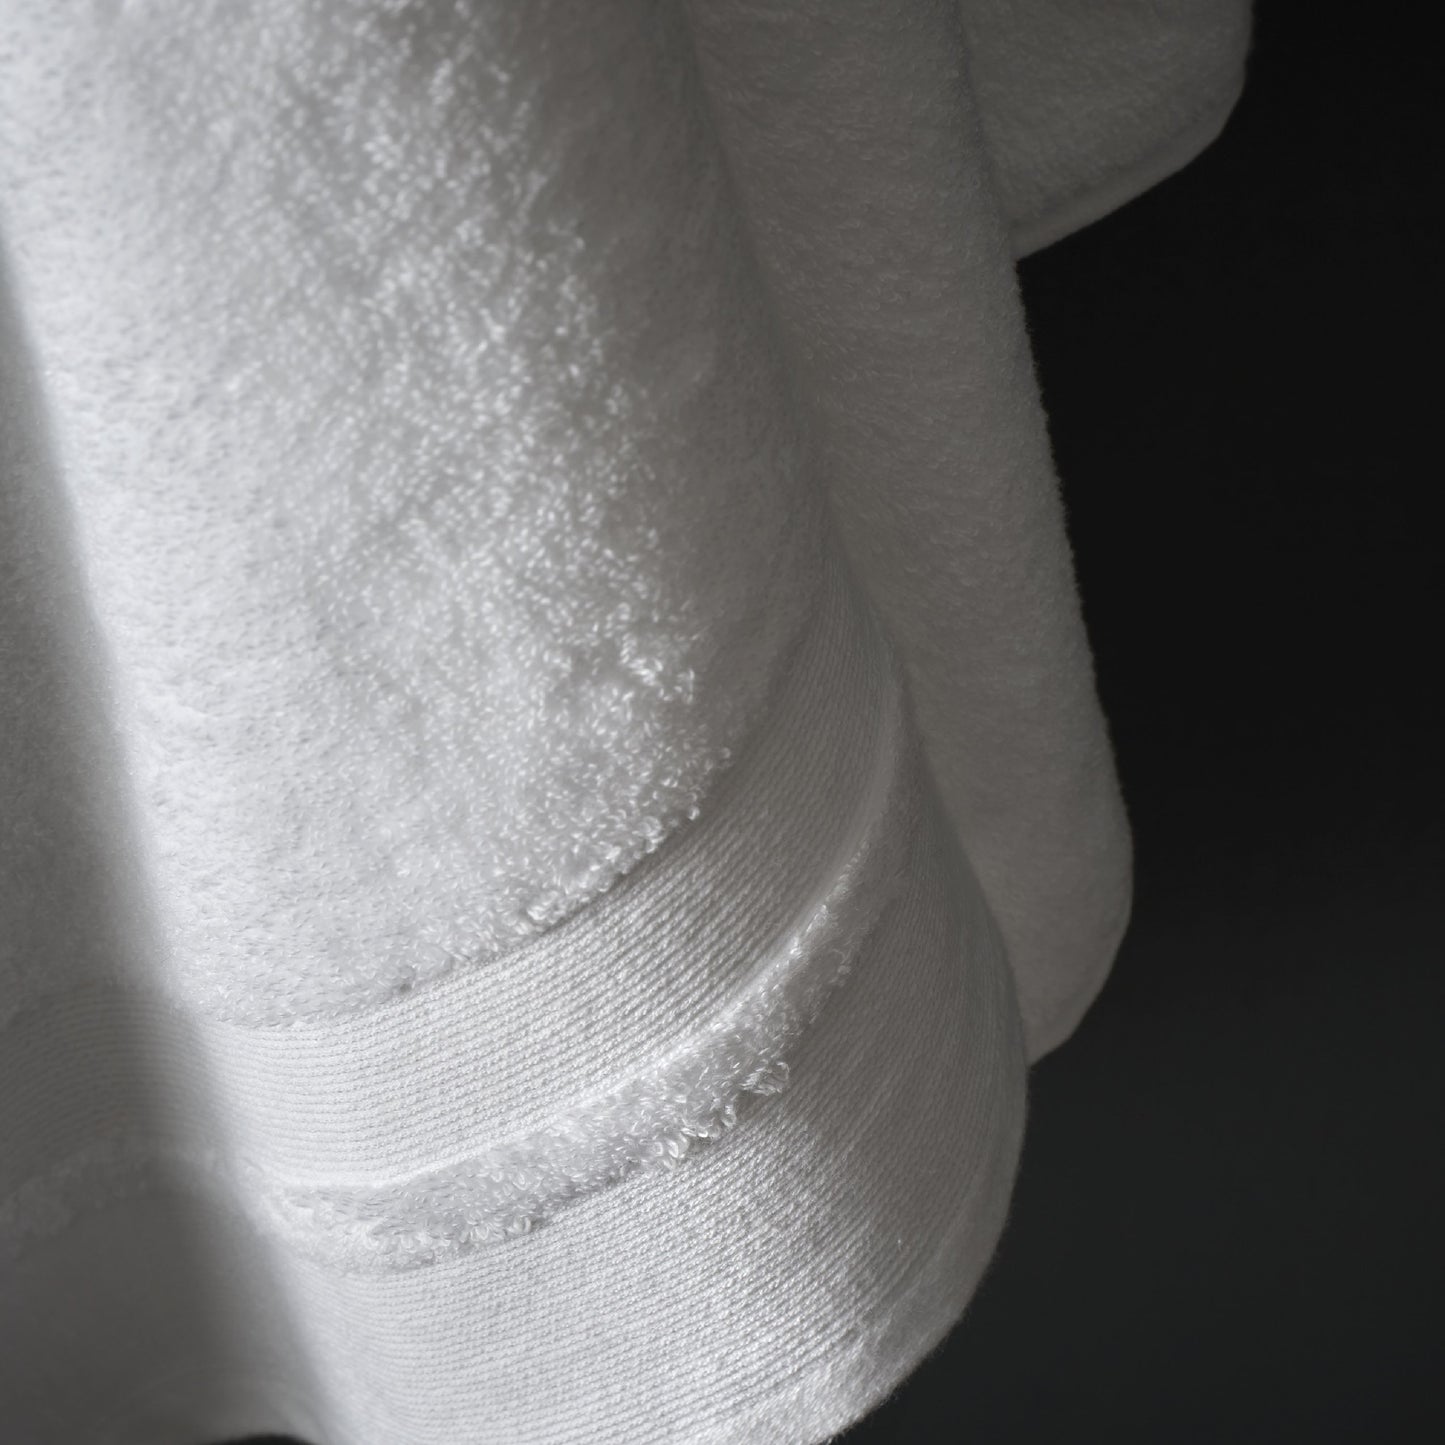 Zero Twist Cotton Modal Bath Sheet White